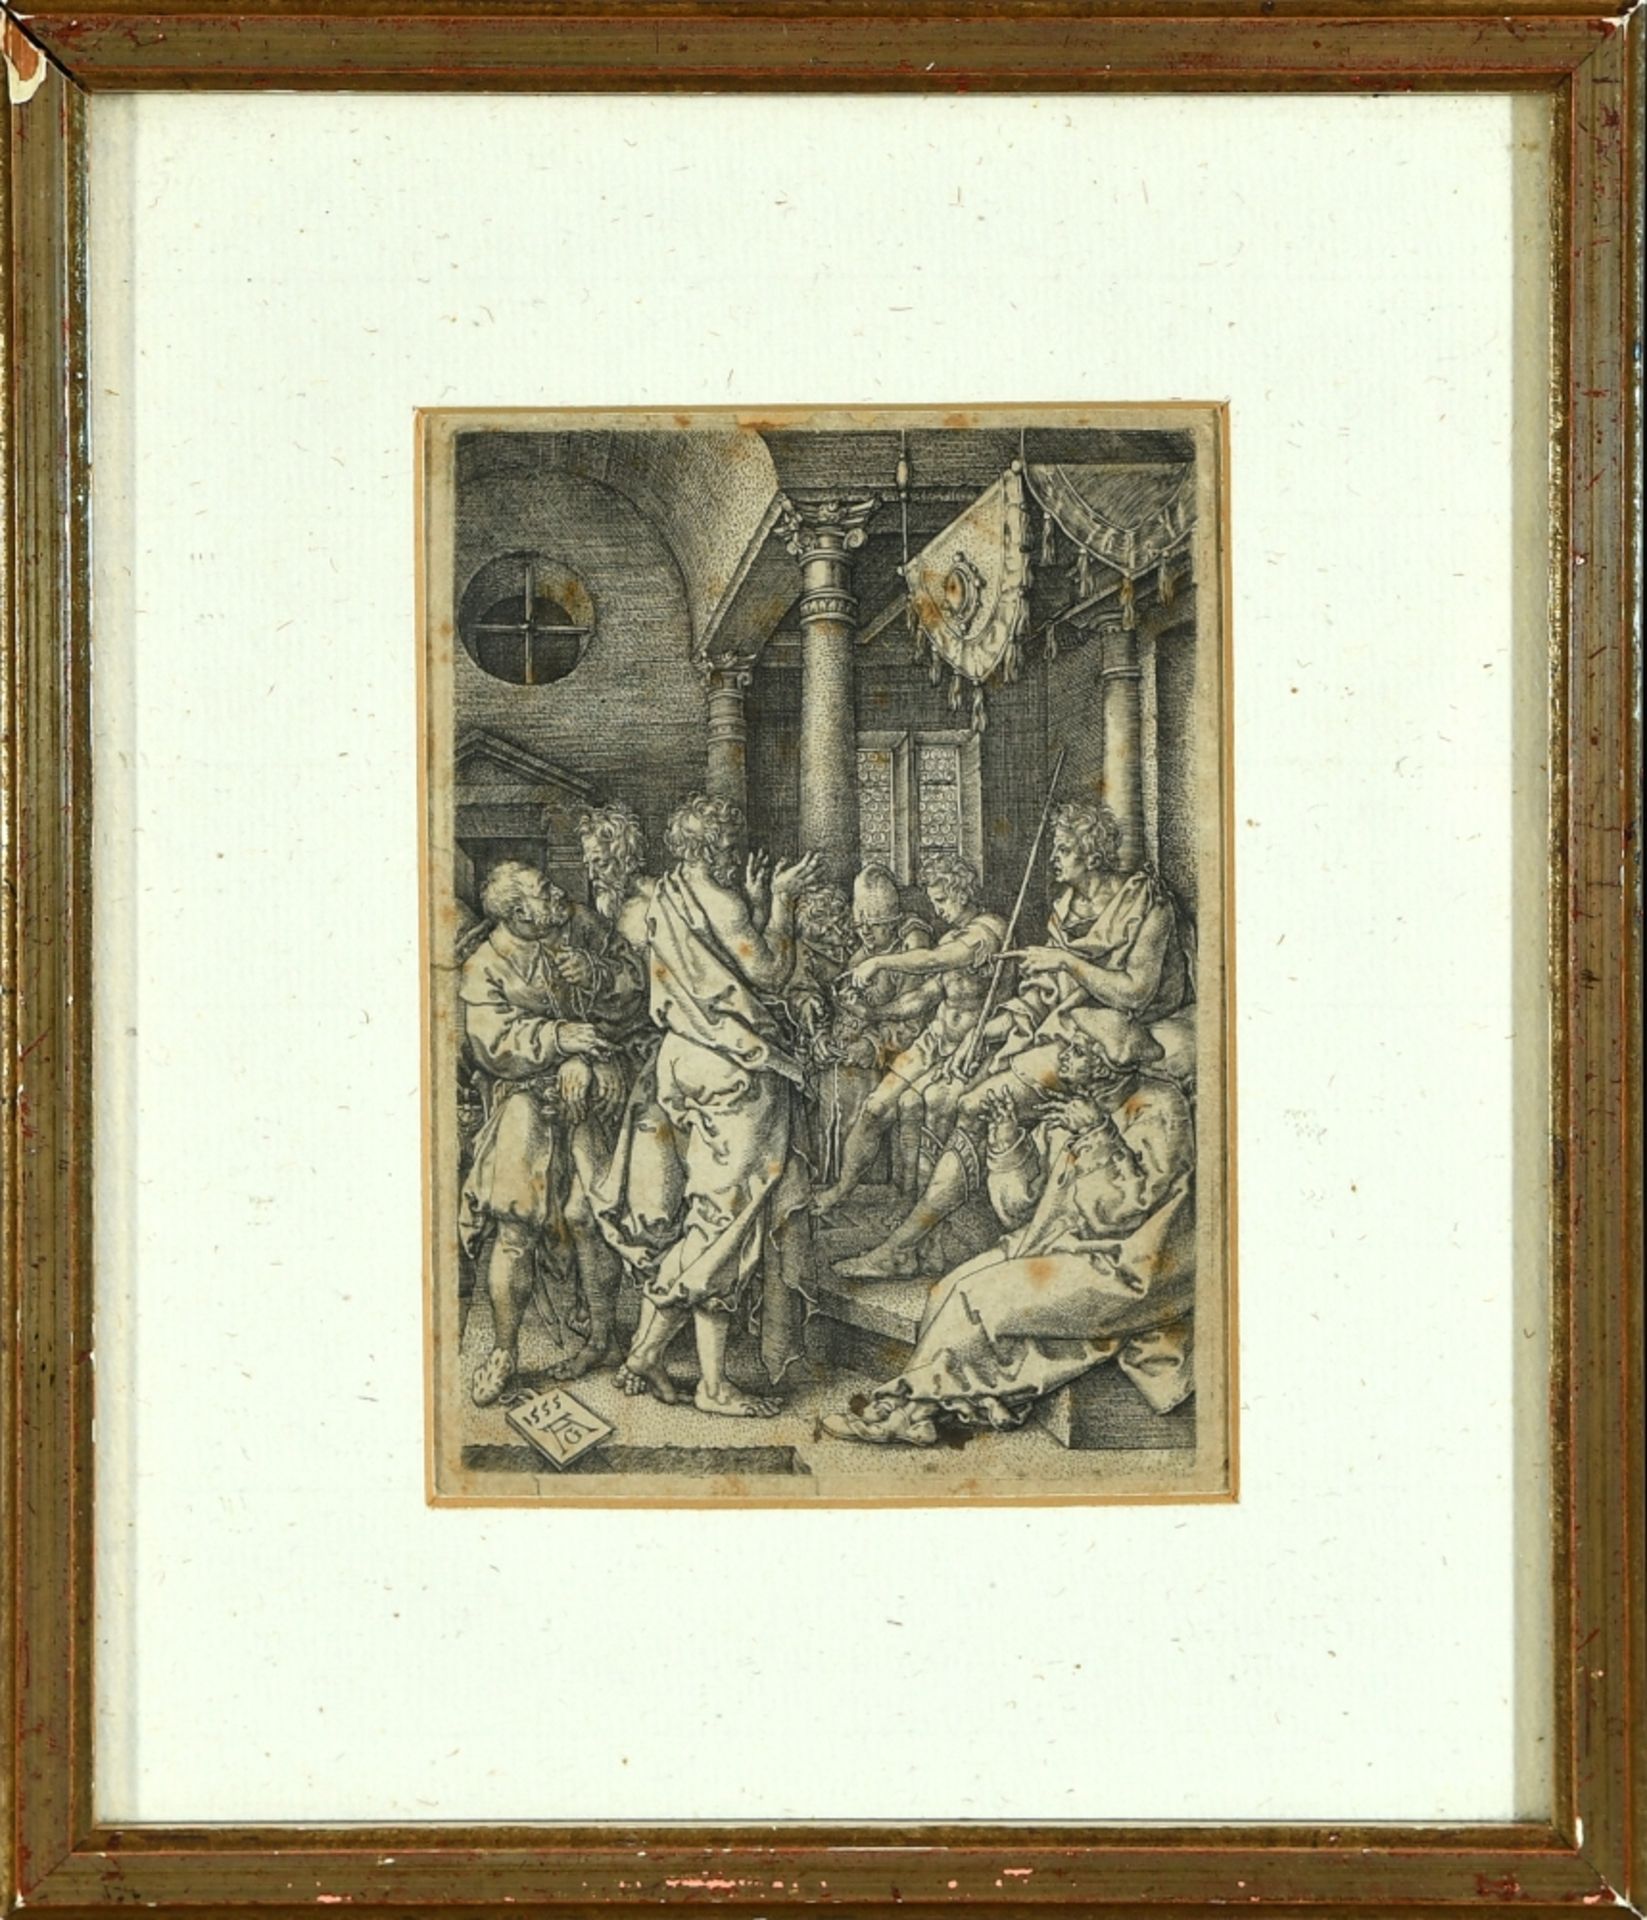 Aldegrever (Trippenmeker), Heinrich, 1502 Paderborn - um 1555/61 Soest